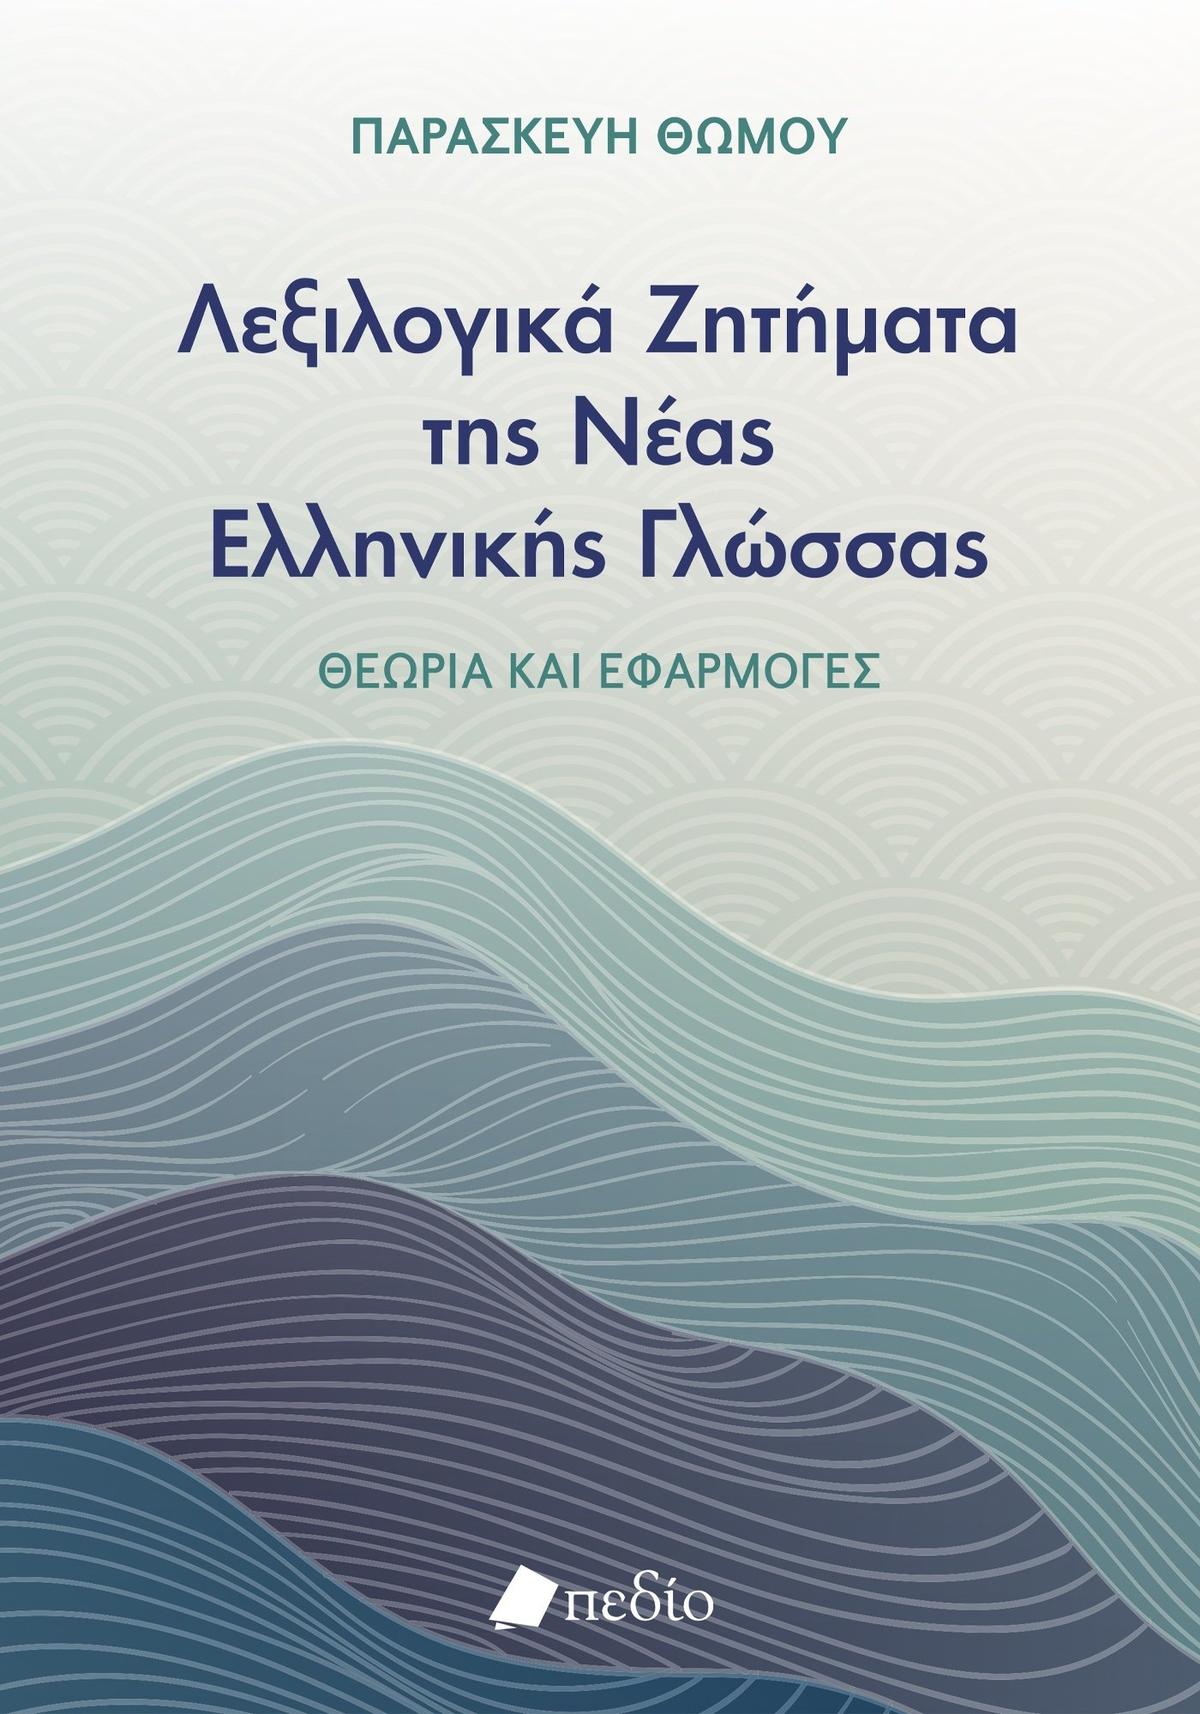 Λεξιλογικά ζητήματα της νέας ελληνικής γλώσσας